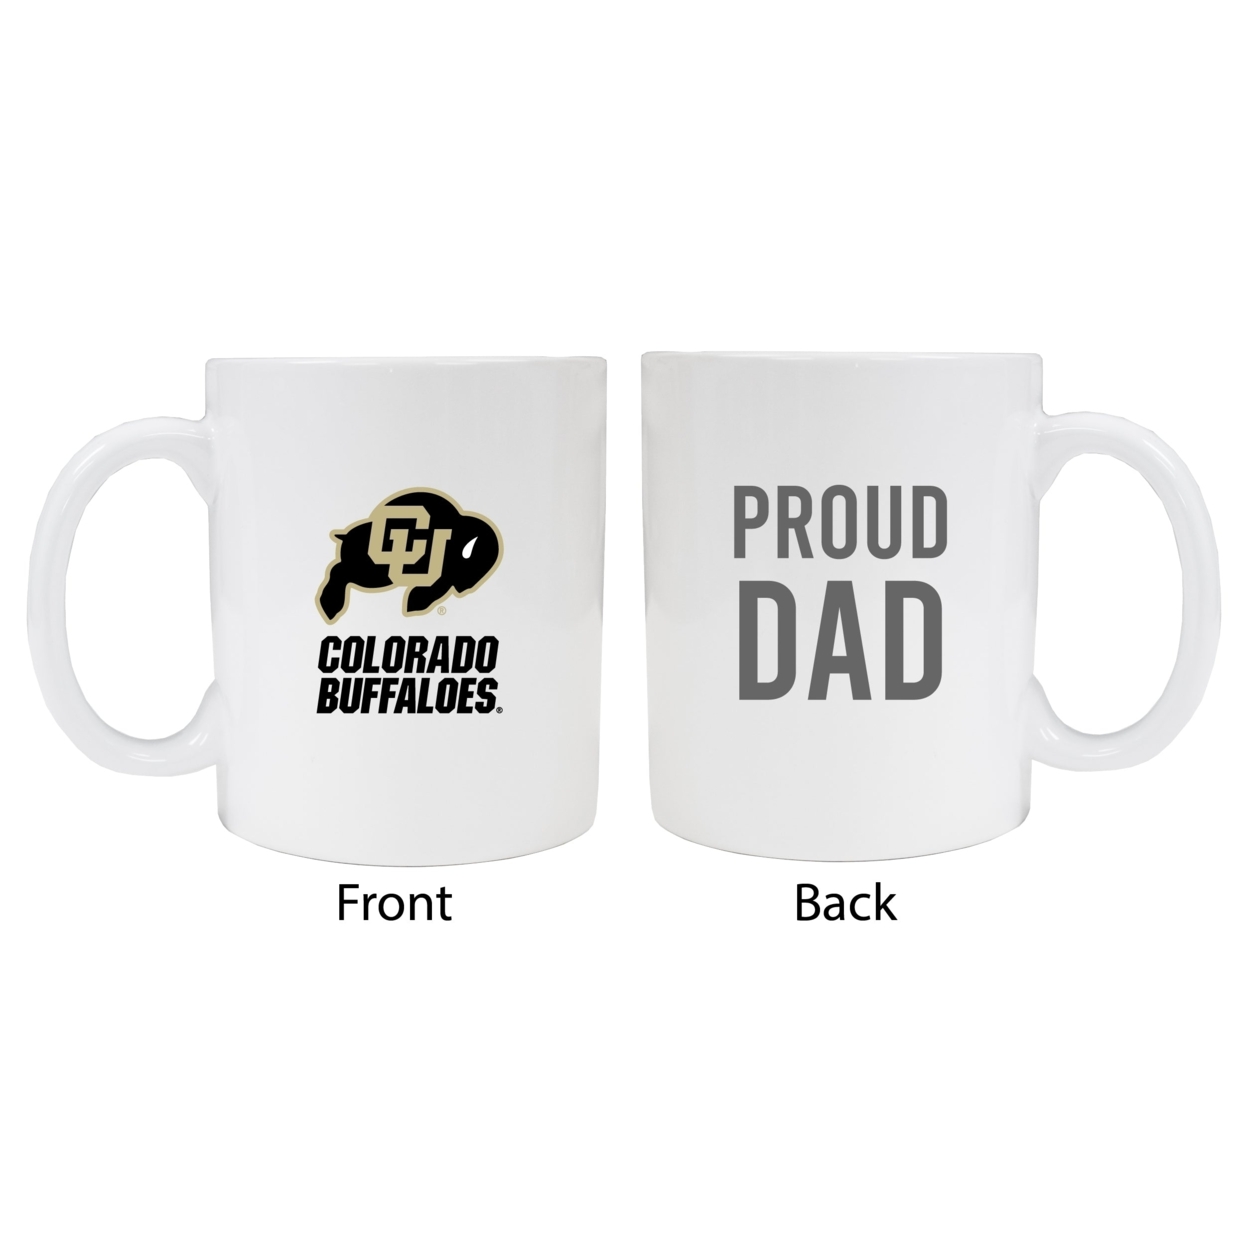 Colorado Buffaloes Proud Dad Ceramic Coffee Mug - White